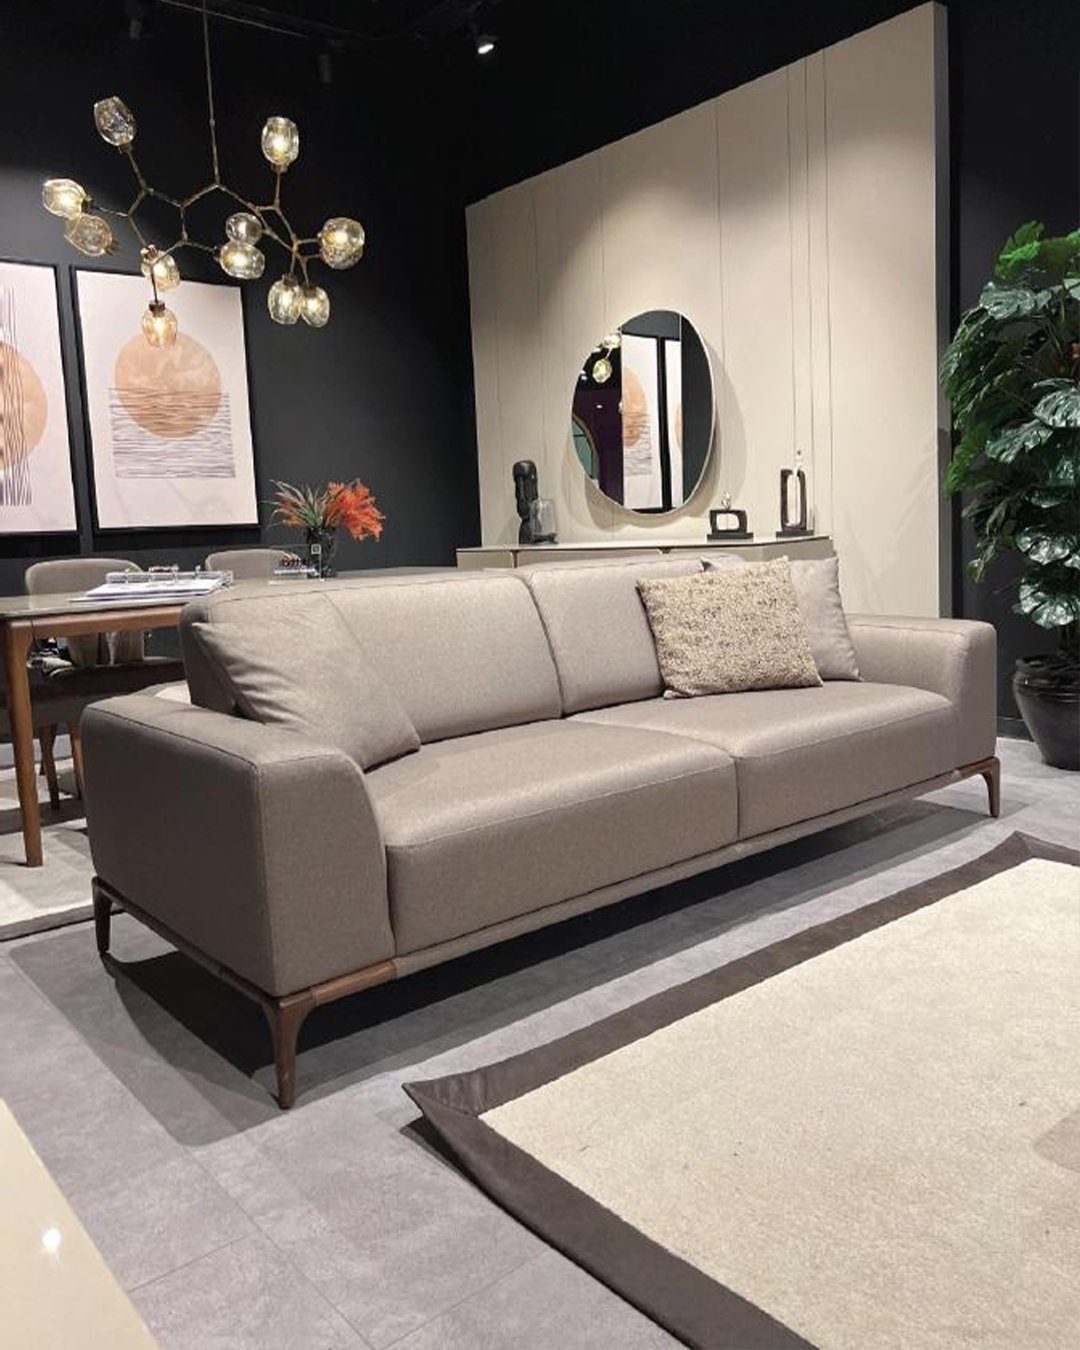 JVmoebel Sofa, Wohnzimmer Sofa Couch braun Neu Möbel Luxus Couchen Design Dreisitzer